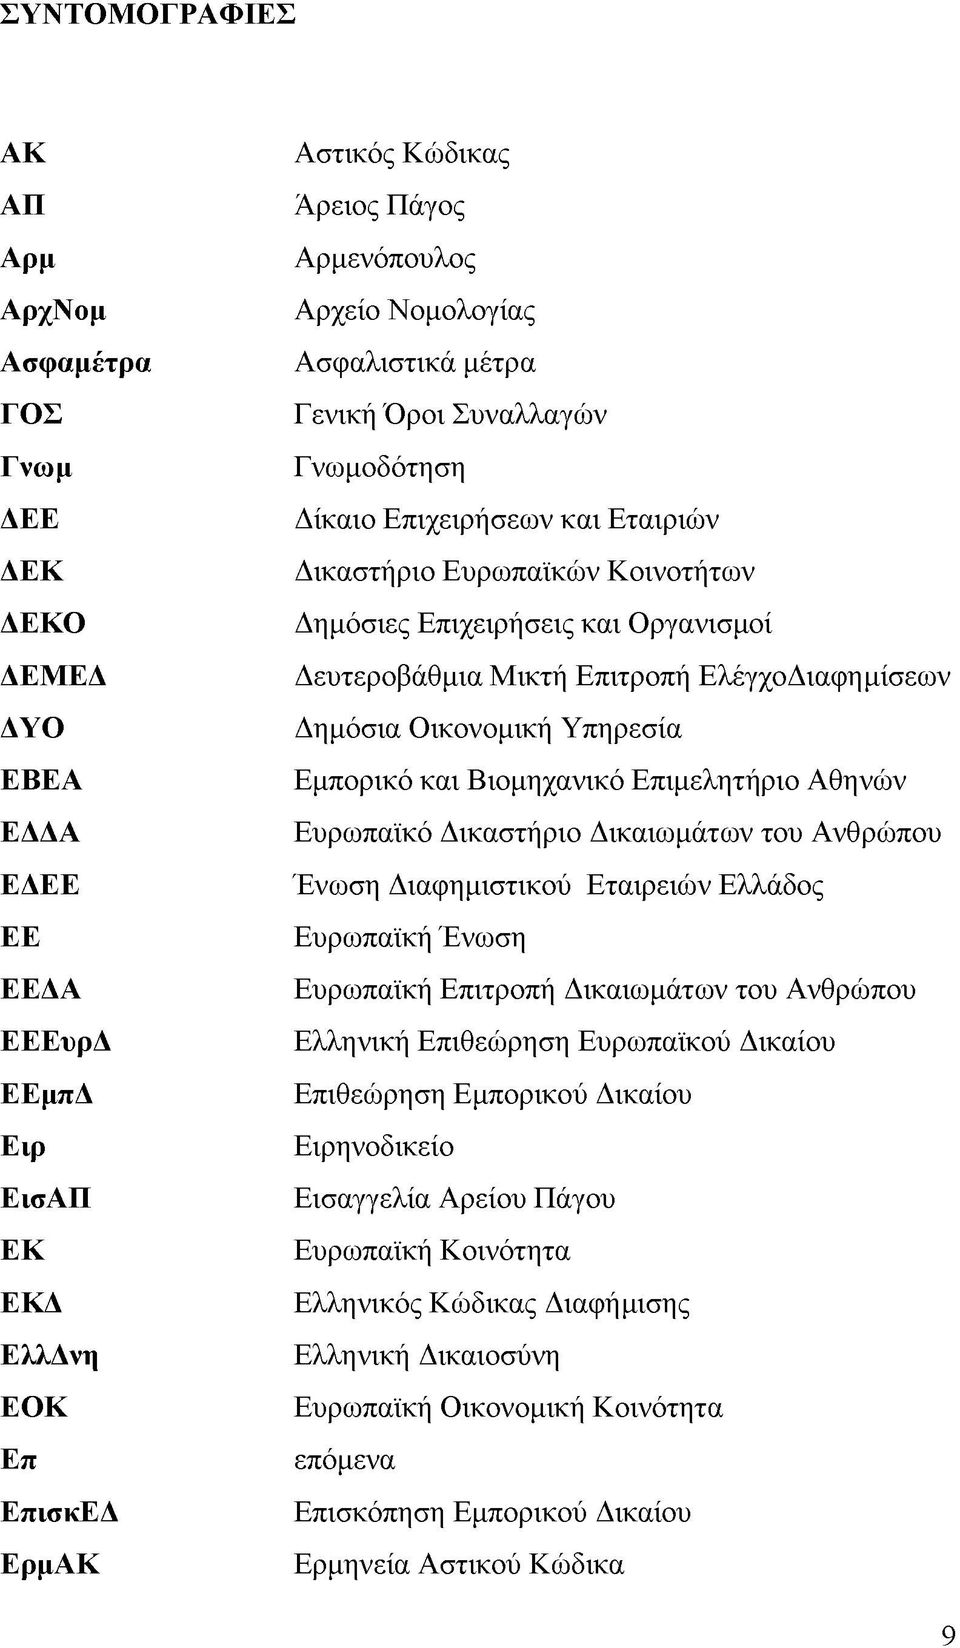 Επιτροπή ΕλέγχοΔιαφημίσεων Δημόσια Οικονομική Υπηρεσία Εμπορικό και Βιομηχανικό Επιμελητήριο Αθηνών Ευρωπαϊκό Δικαστήριο Δικαιωμάτων του Ανθρώπου Ένωση Διαφημιστικού Εταιρειών Ελλάδος Ευρωπαϊκή Ένωση